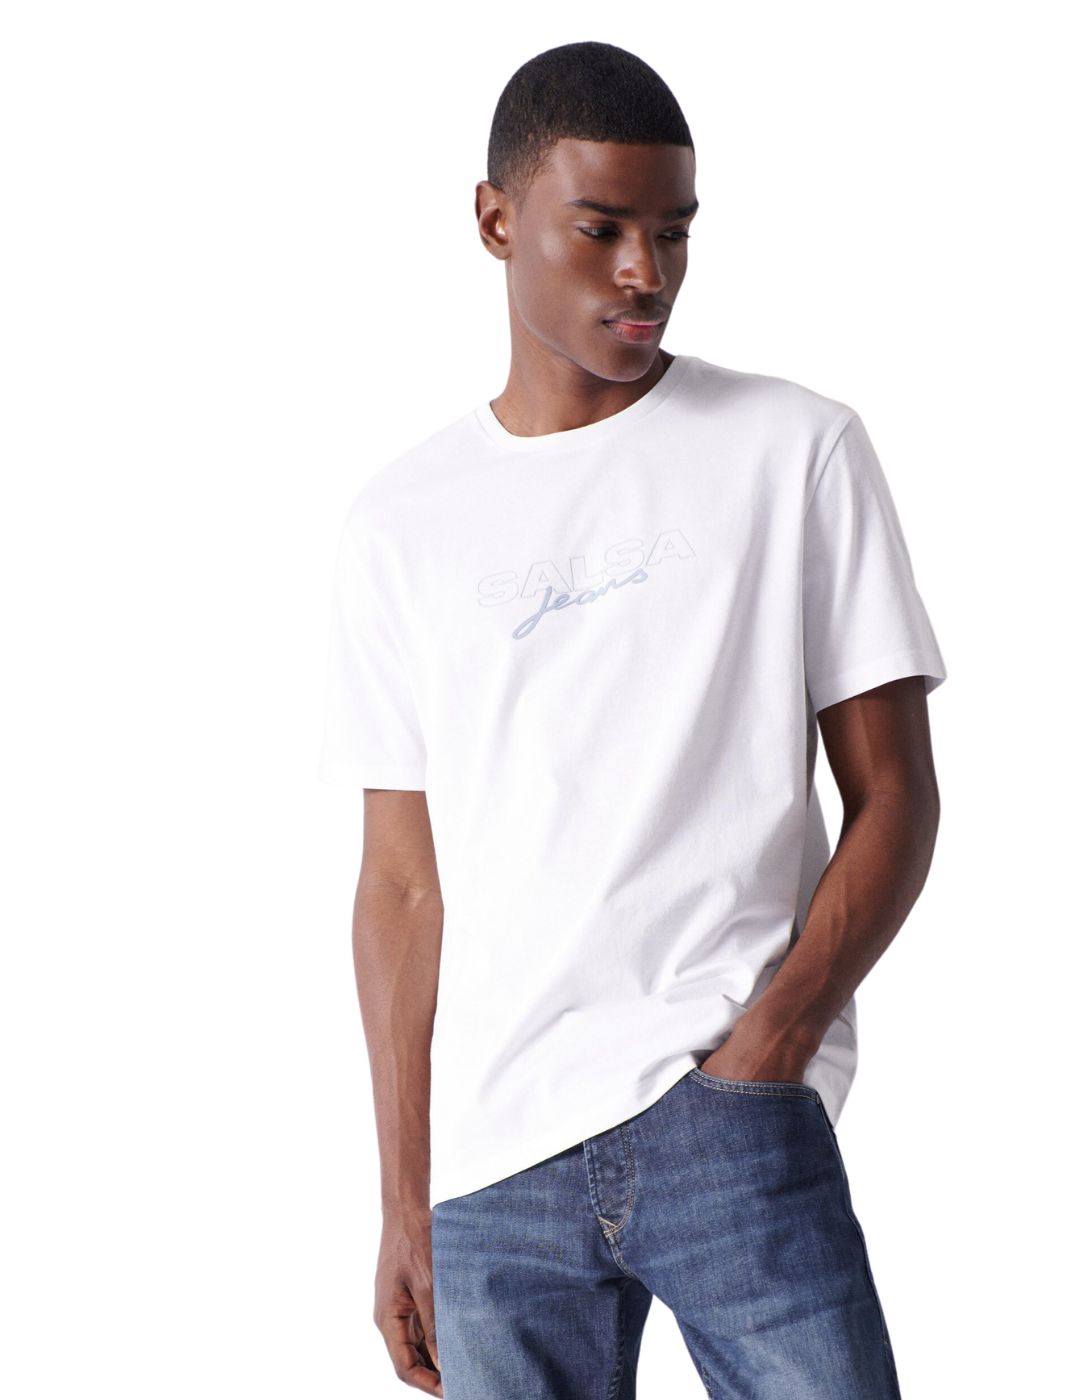 Camiseta blanca Salsa con branding | Bicos de Fío